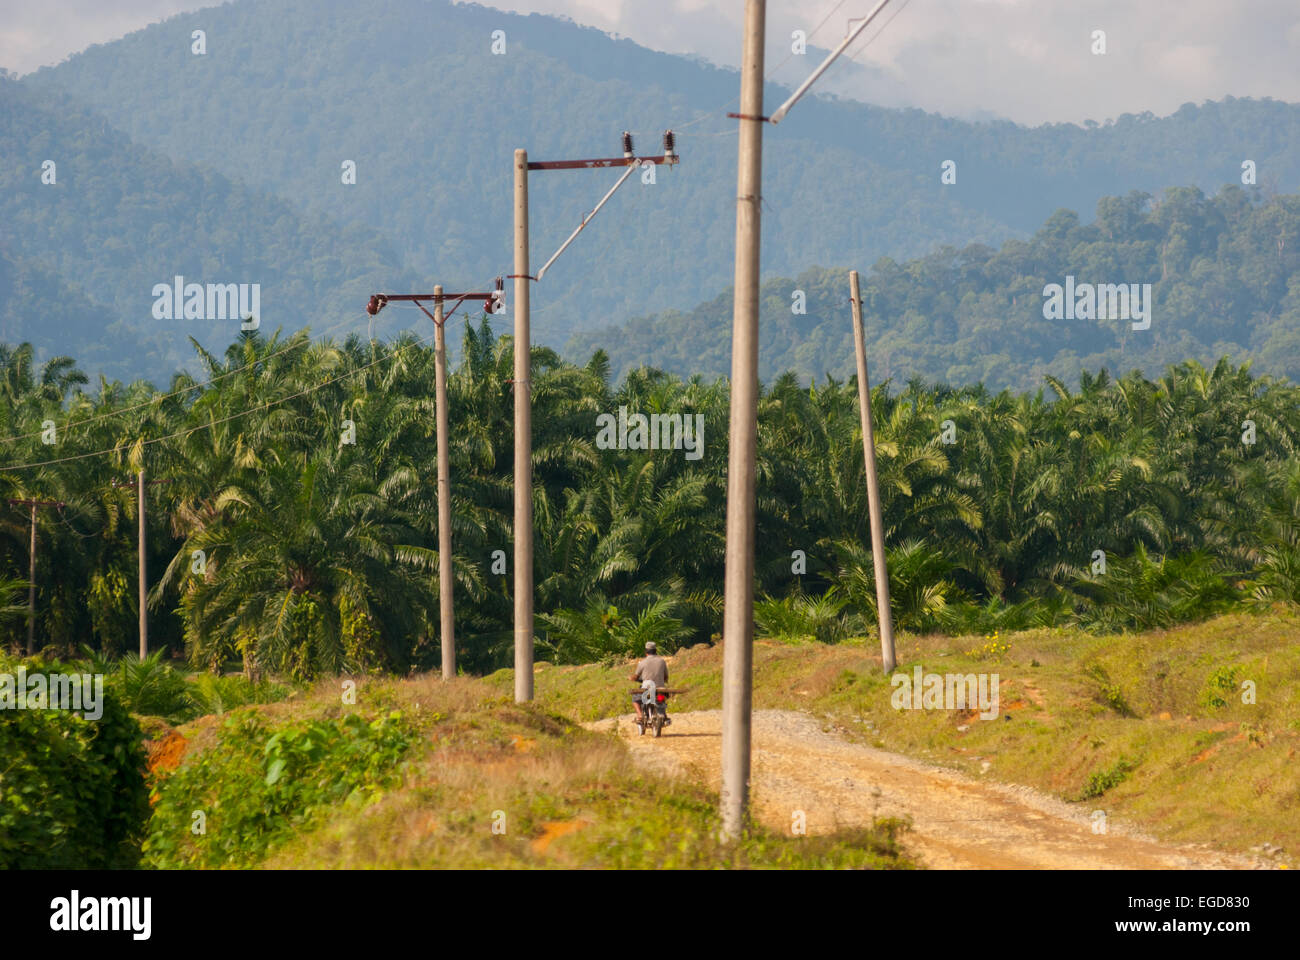 Las plantaciones de palma de aceite en el norte de la provincia de Sumatra, Indonesia. Foto de stock